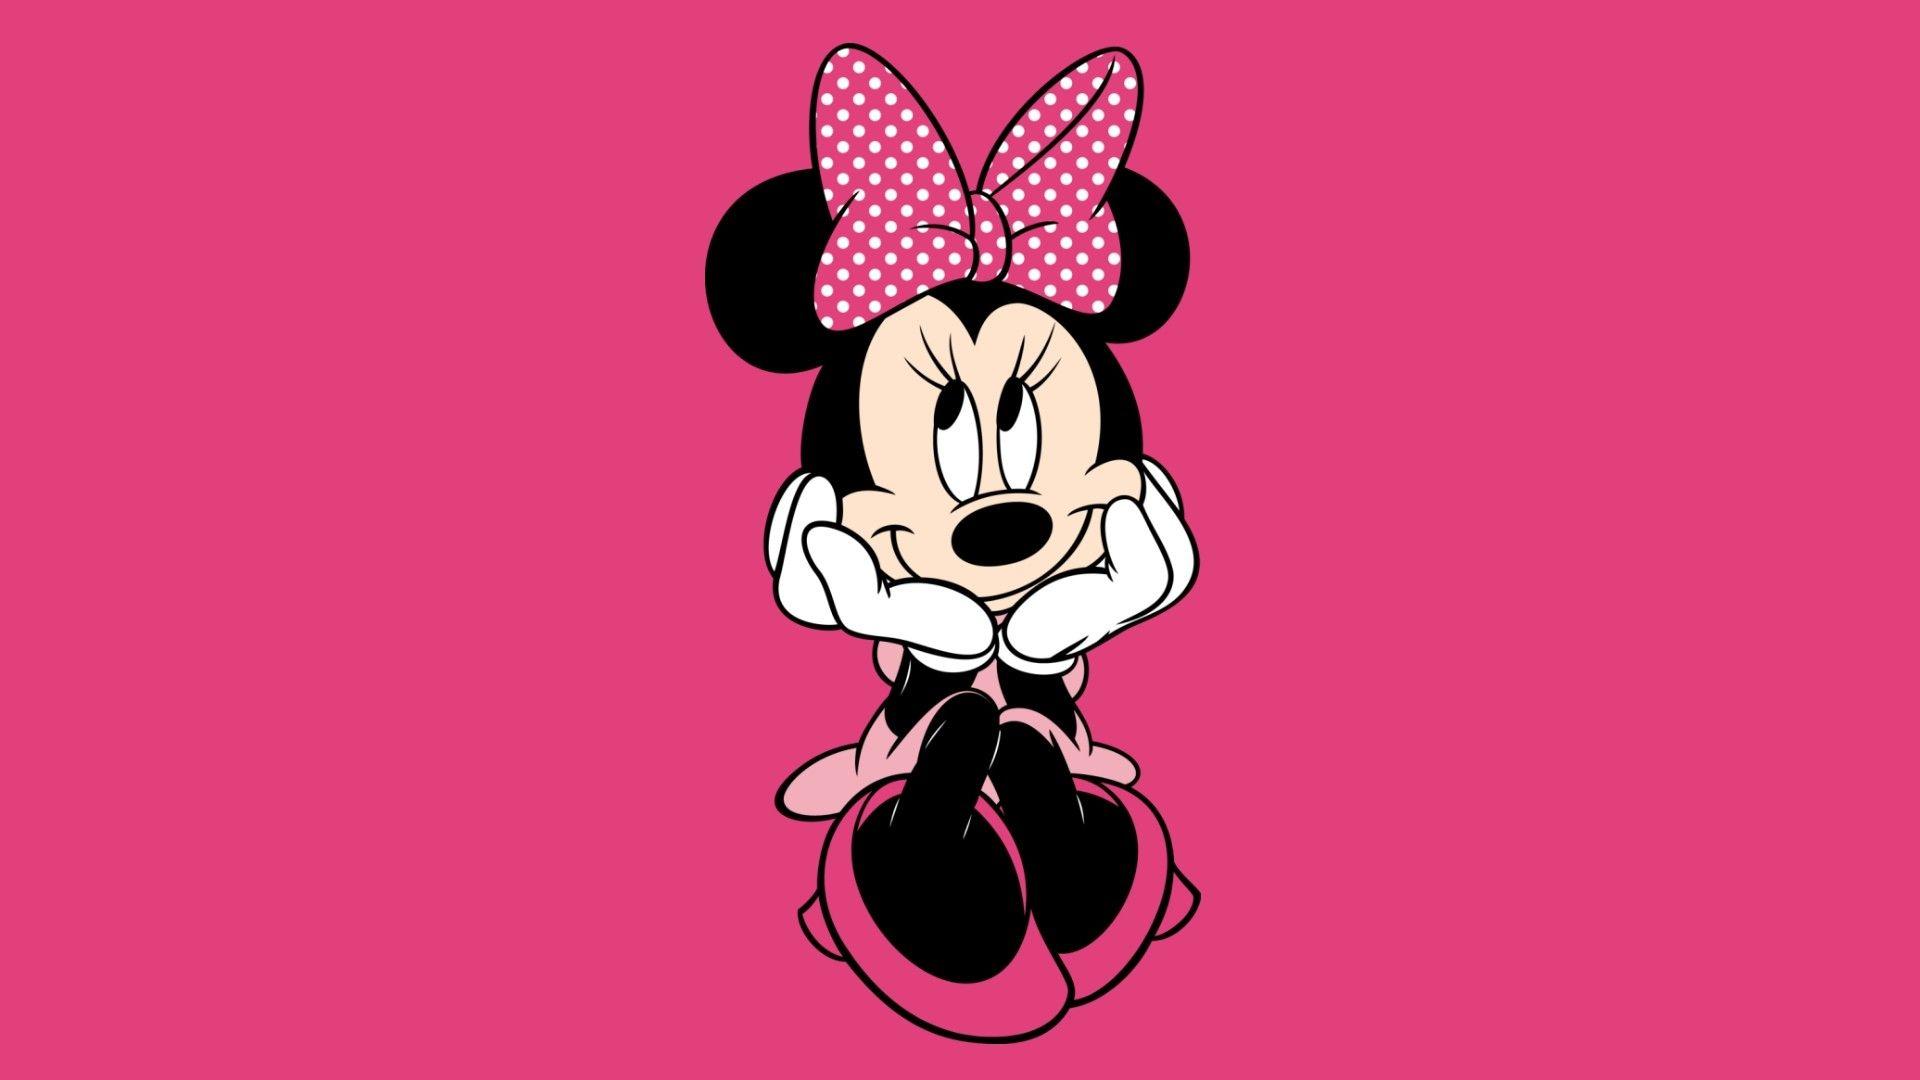 Pink Minnie Mouse Wallpapers - Top Những Hình Ảnh Đẹp